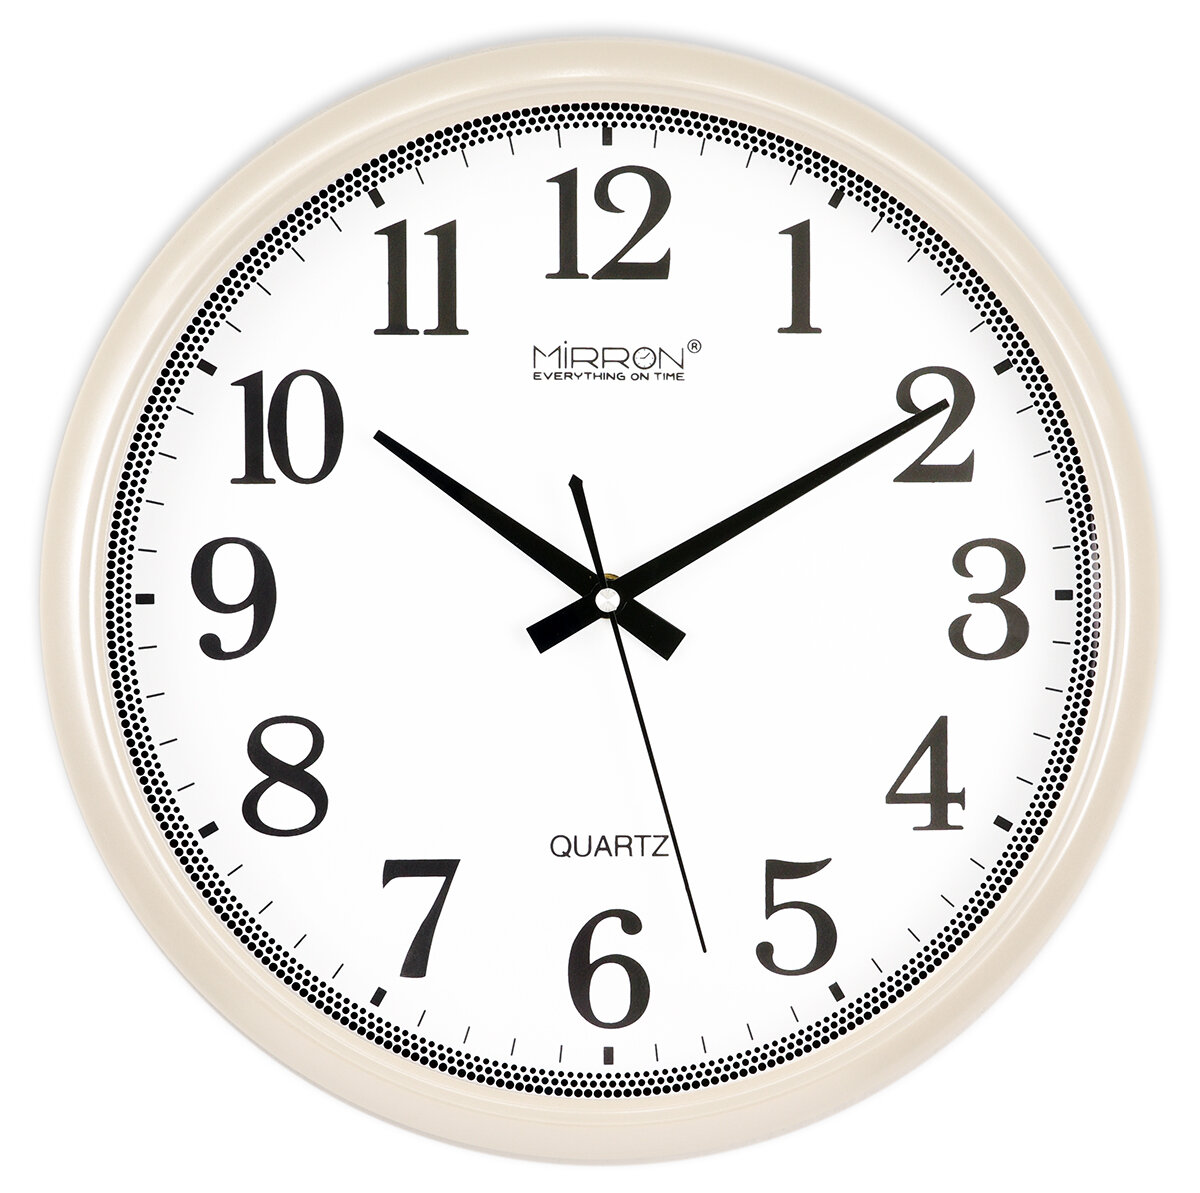 Большие круглые настенные часы MIRRON P2274A БПБ/Часы диаметром 34 см/Белые перламутровые часы/Часы с большим белым циферблатом/Крупные арабские цифры/Часы в подарок